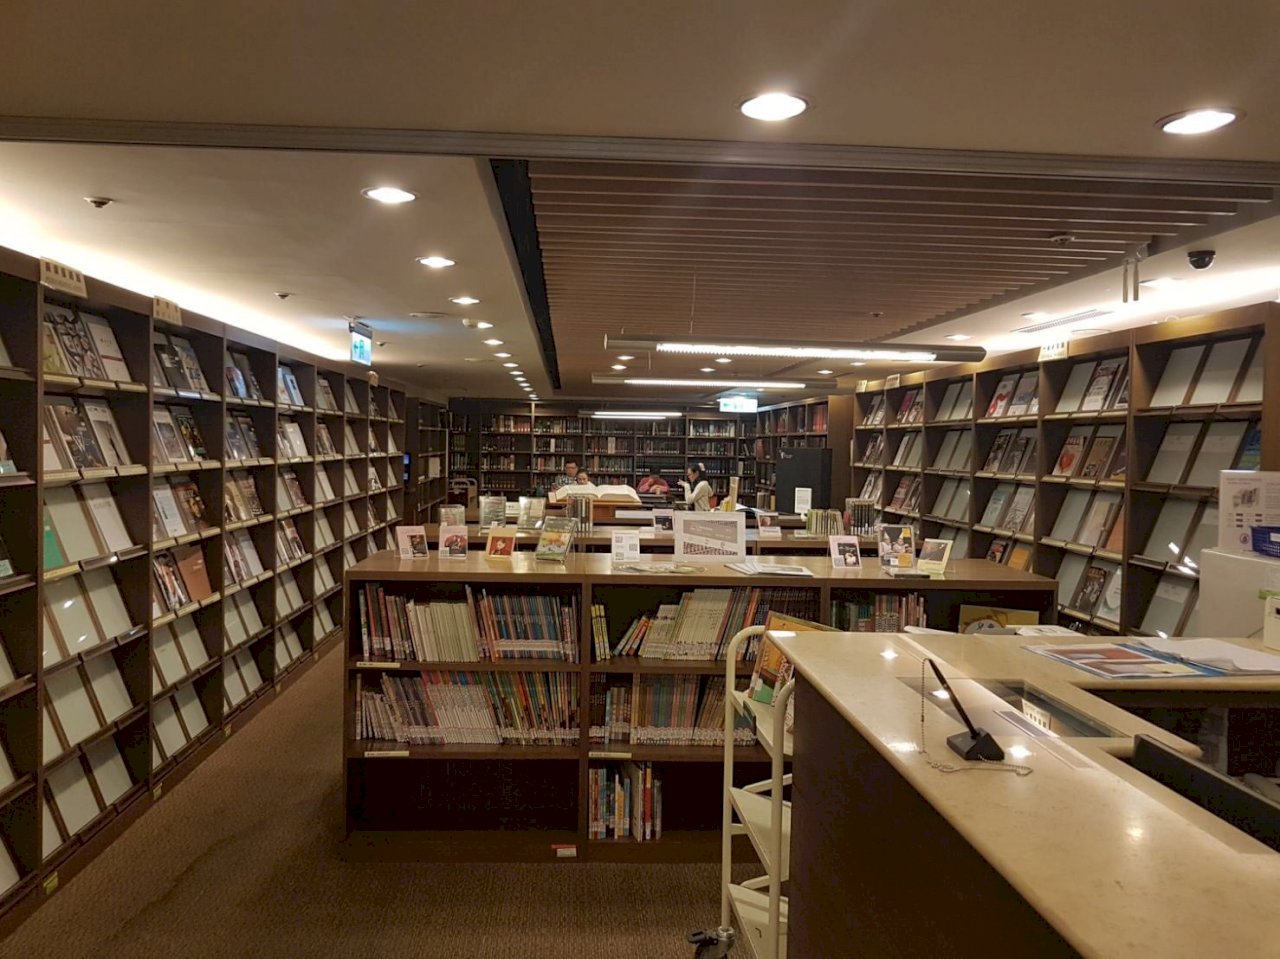 兩廳院圖書館啟動轉型升級  明年1月重新開放